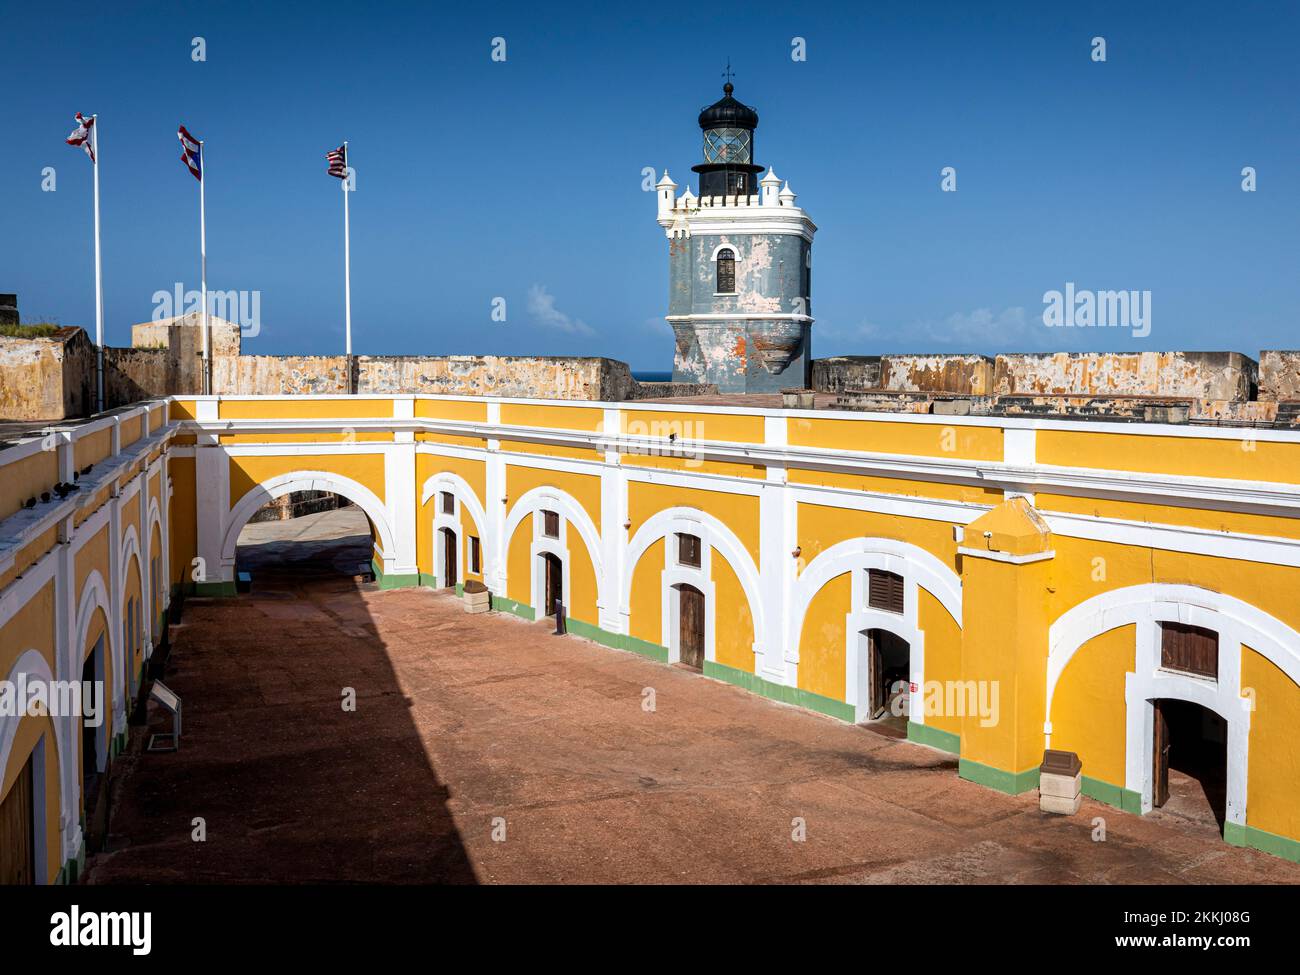 El Morro Fort and Lighthouse, Old San Juan, auf der tropischen karibischen Insel Puerto Rico, USA. Stockfoto